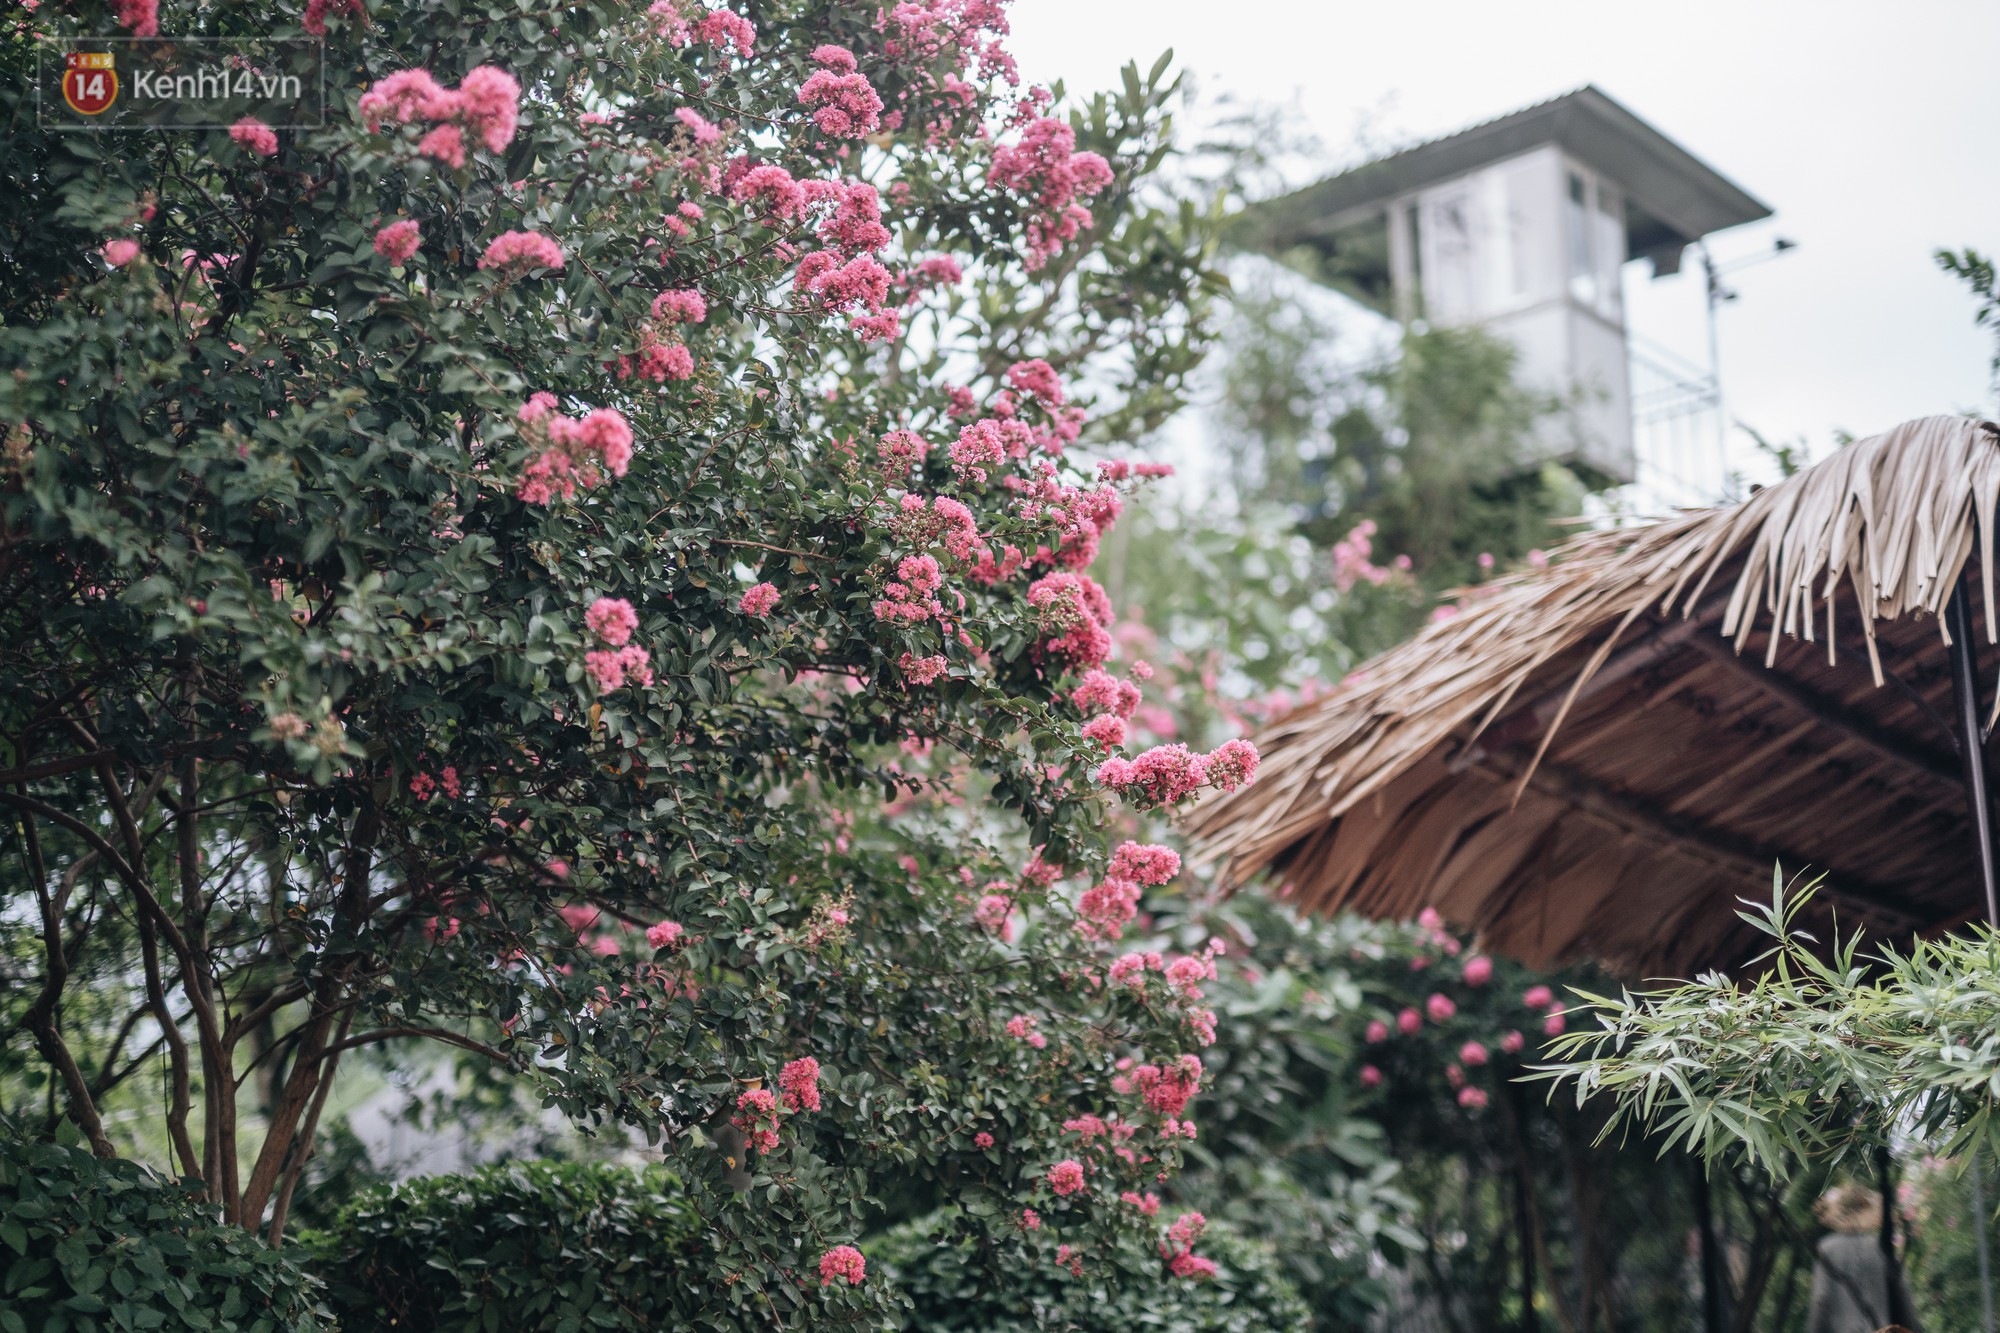 Chùm ảnh: Con đường ở Hà Nội được tạo nên bởi 100 gốc hoa tường vi đẹp như khu vườn cổ tích - Ảnh 7.